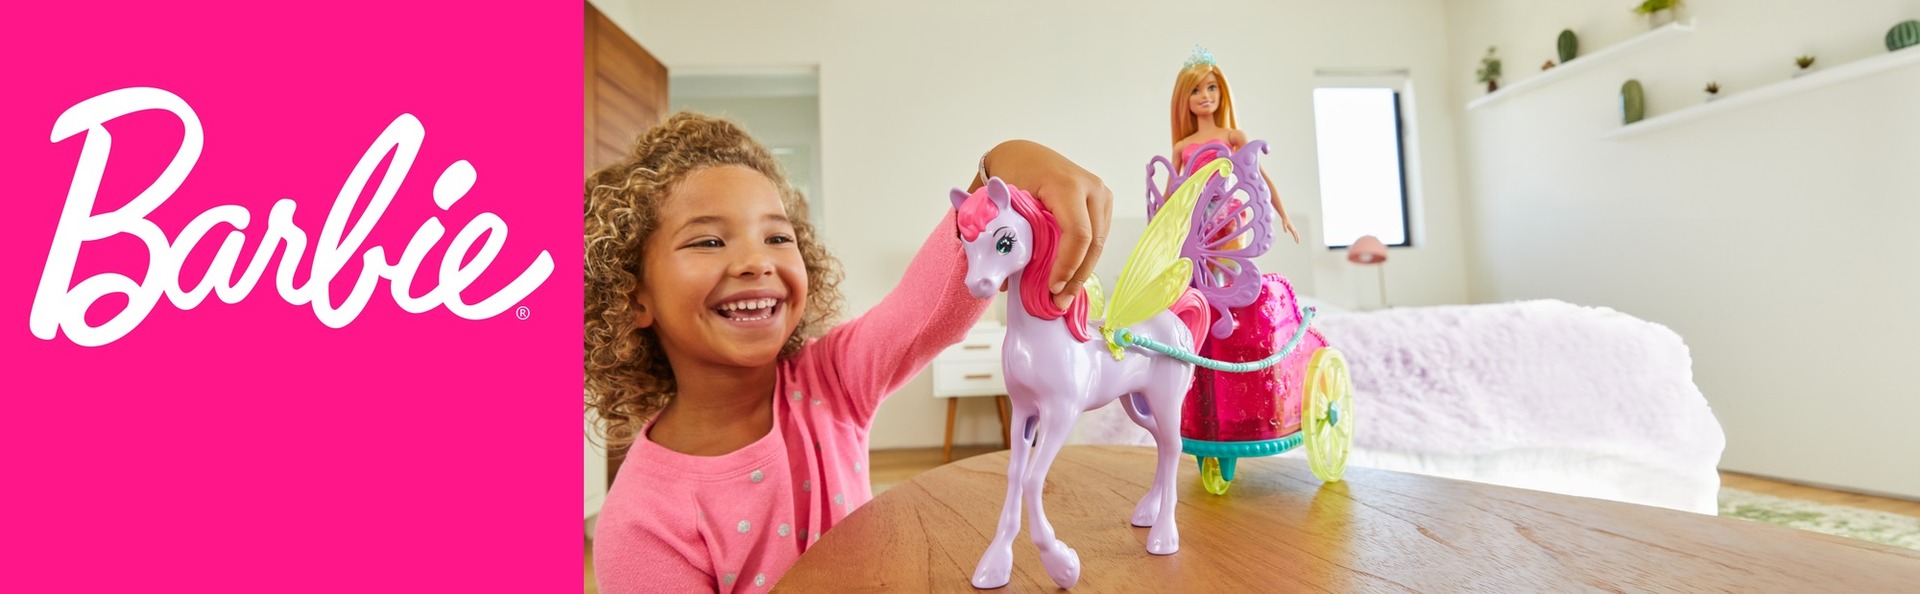 Boneca Barbie Aventura Das Princesas Com Cavalo - Mattel